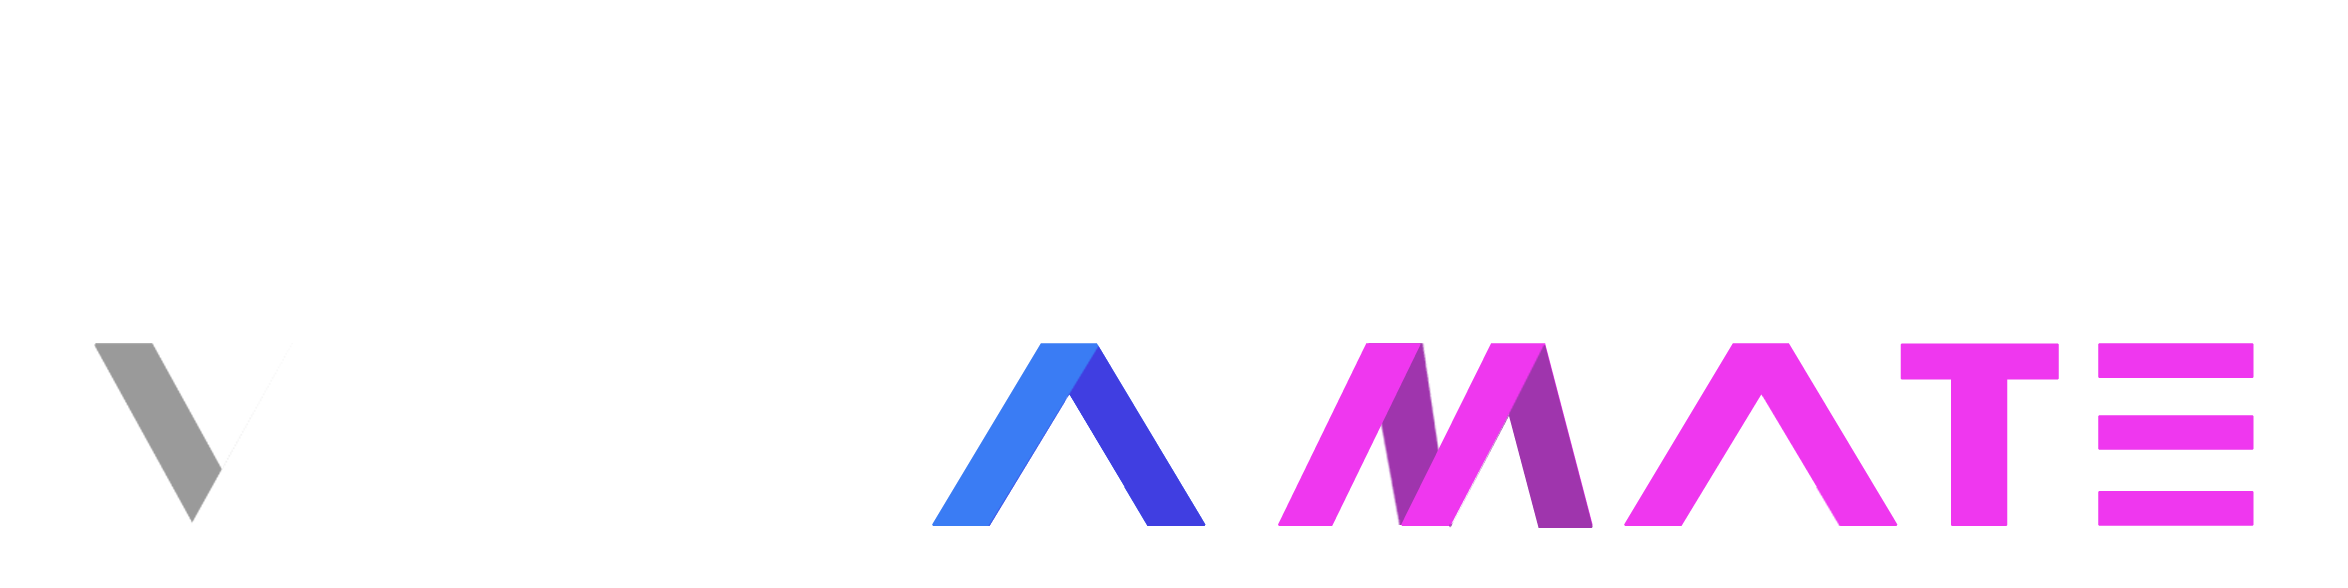 Virt-a-Mate plus vamX.png